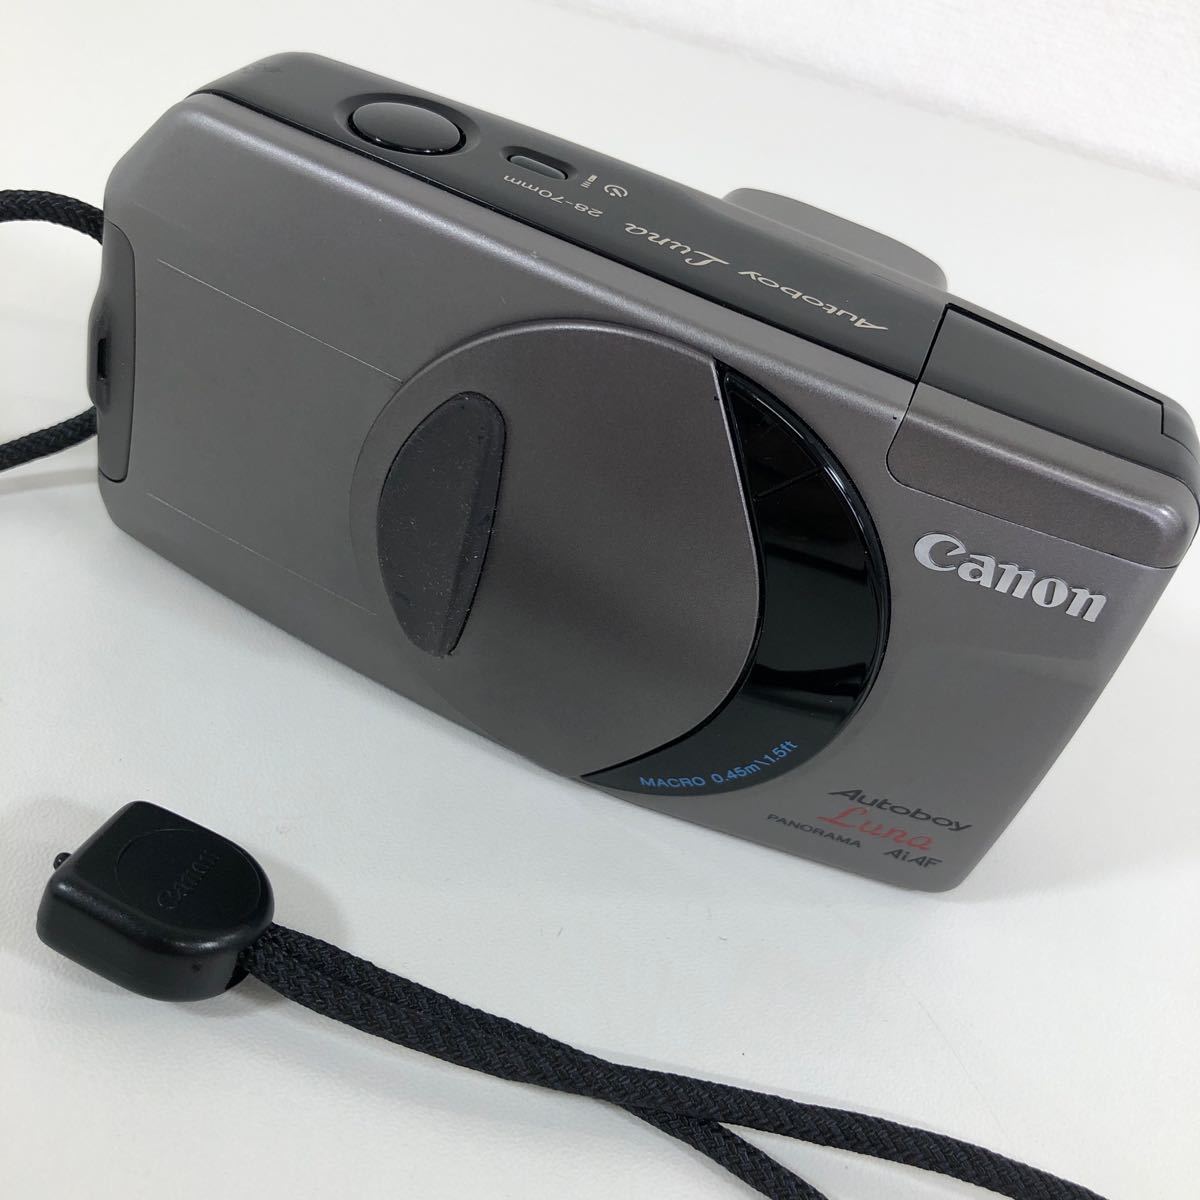 G※ Canon キャノン Autoboy Luna オートボーイ ルナ 28-70mm パノラマ フィルムカメラ コンパクトカメラ 傷 汚れ 有り 通電確認済み_画像10